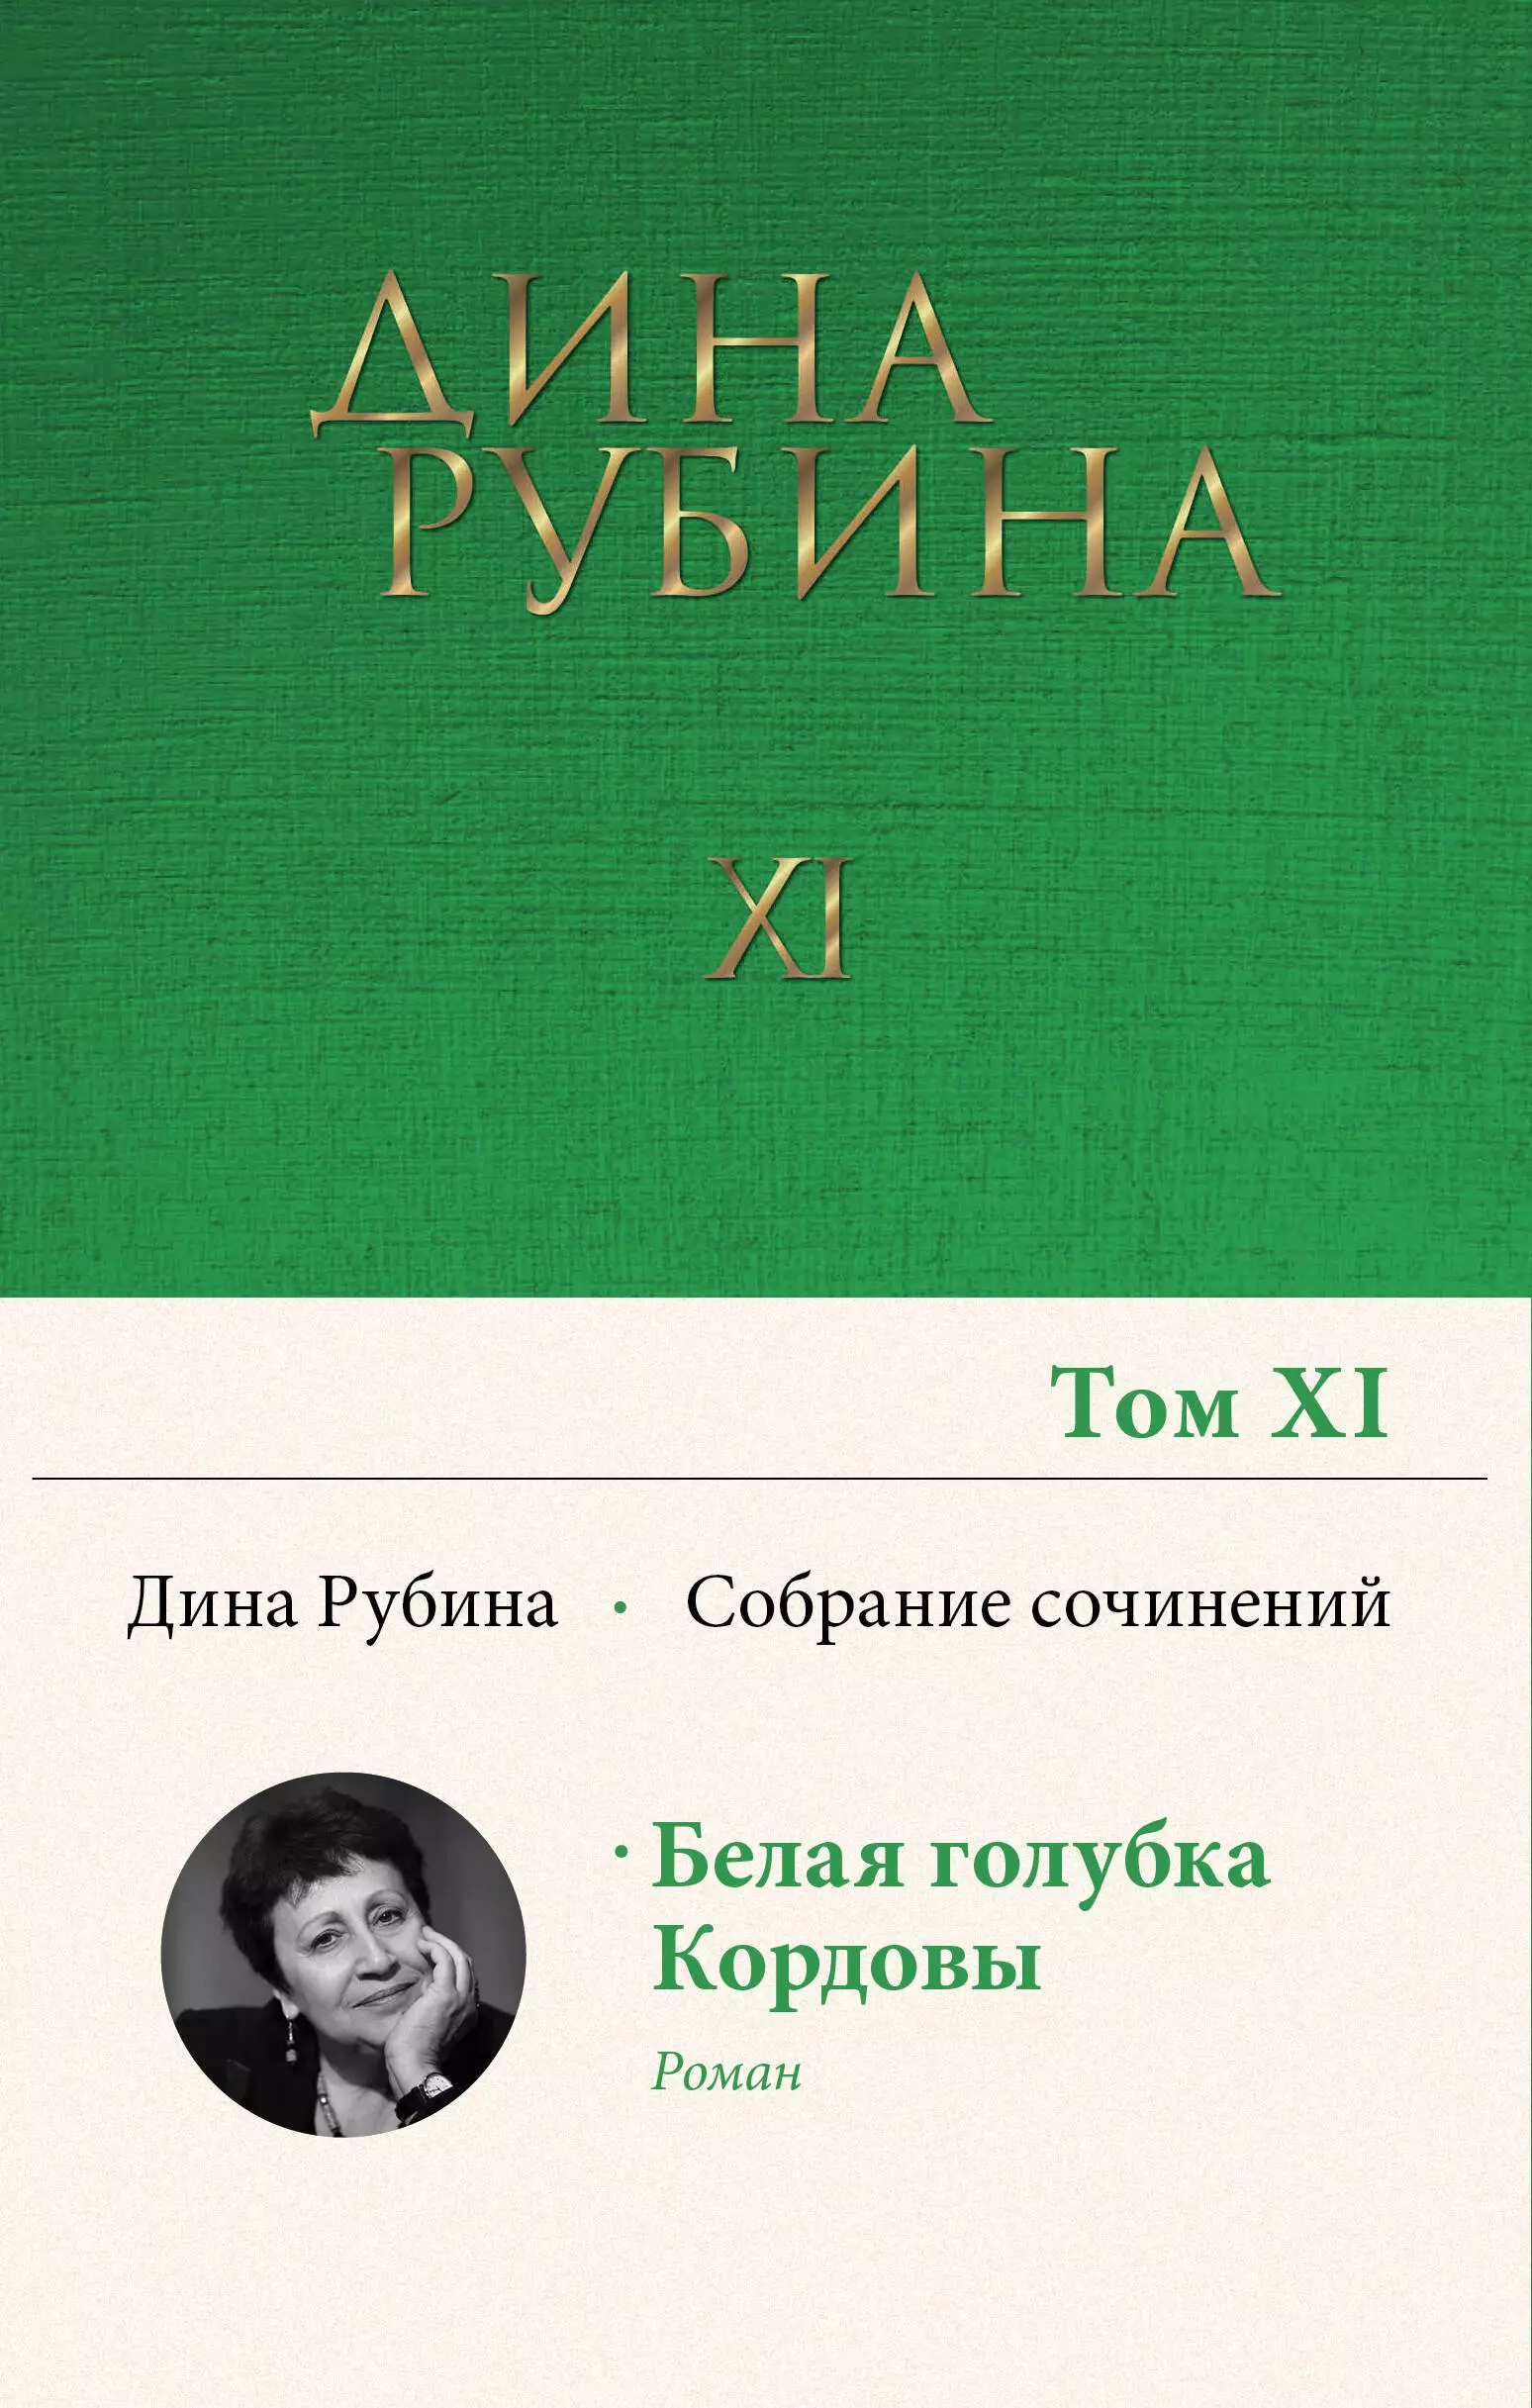 Рубина Дина Ильинична - Собрание сочинений. I-XXI. Том XI. 2008-2009